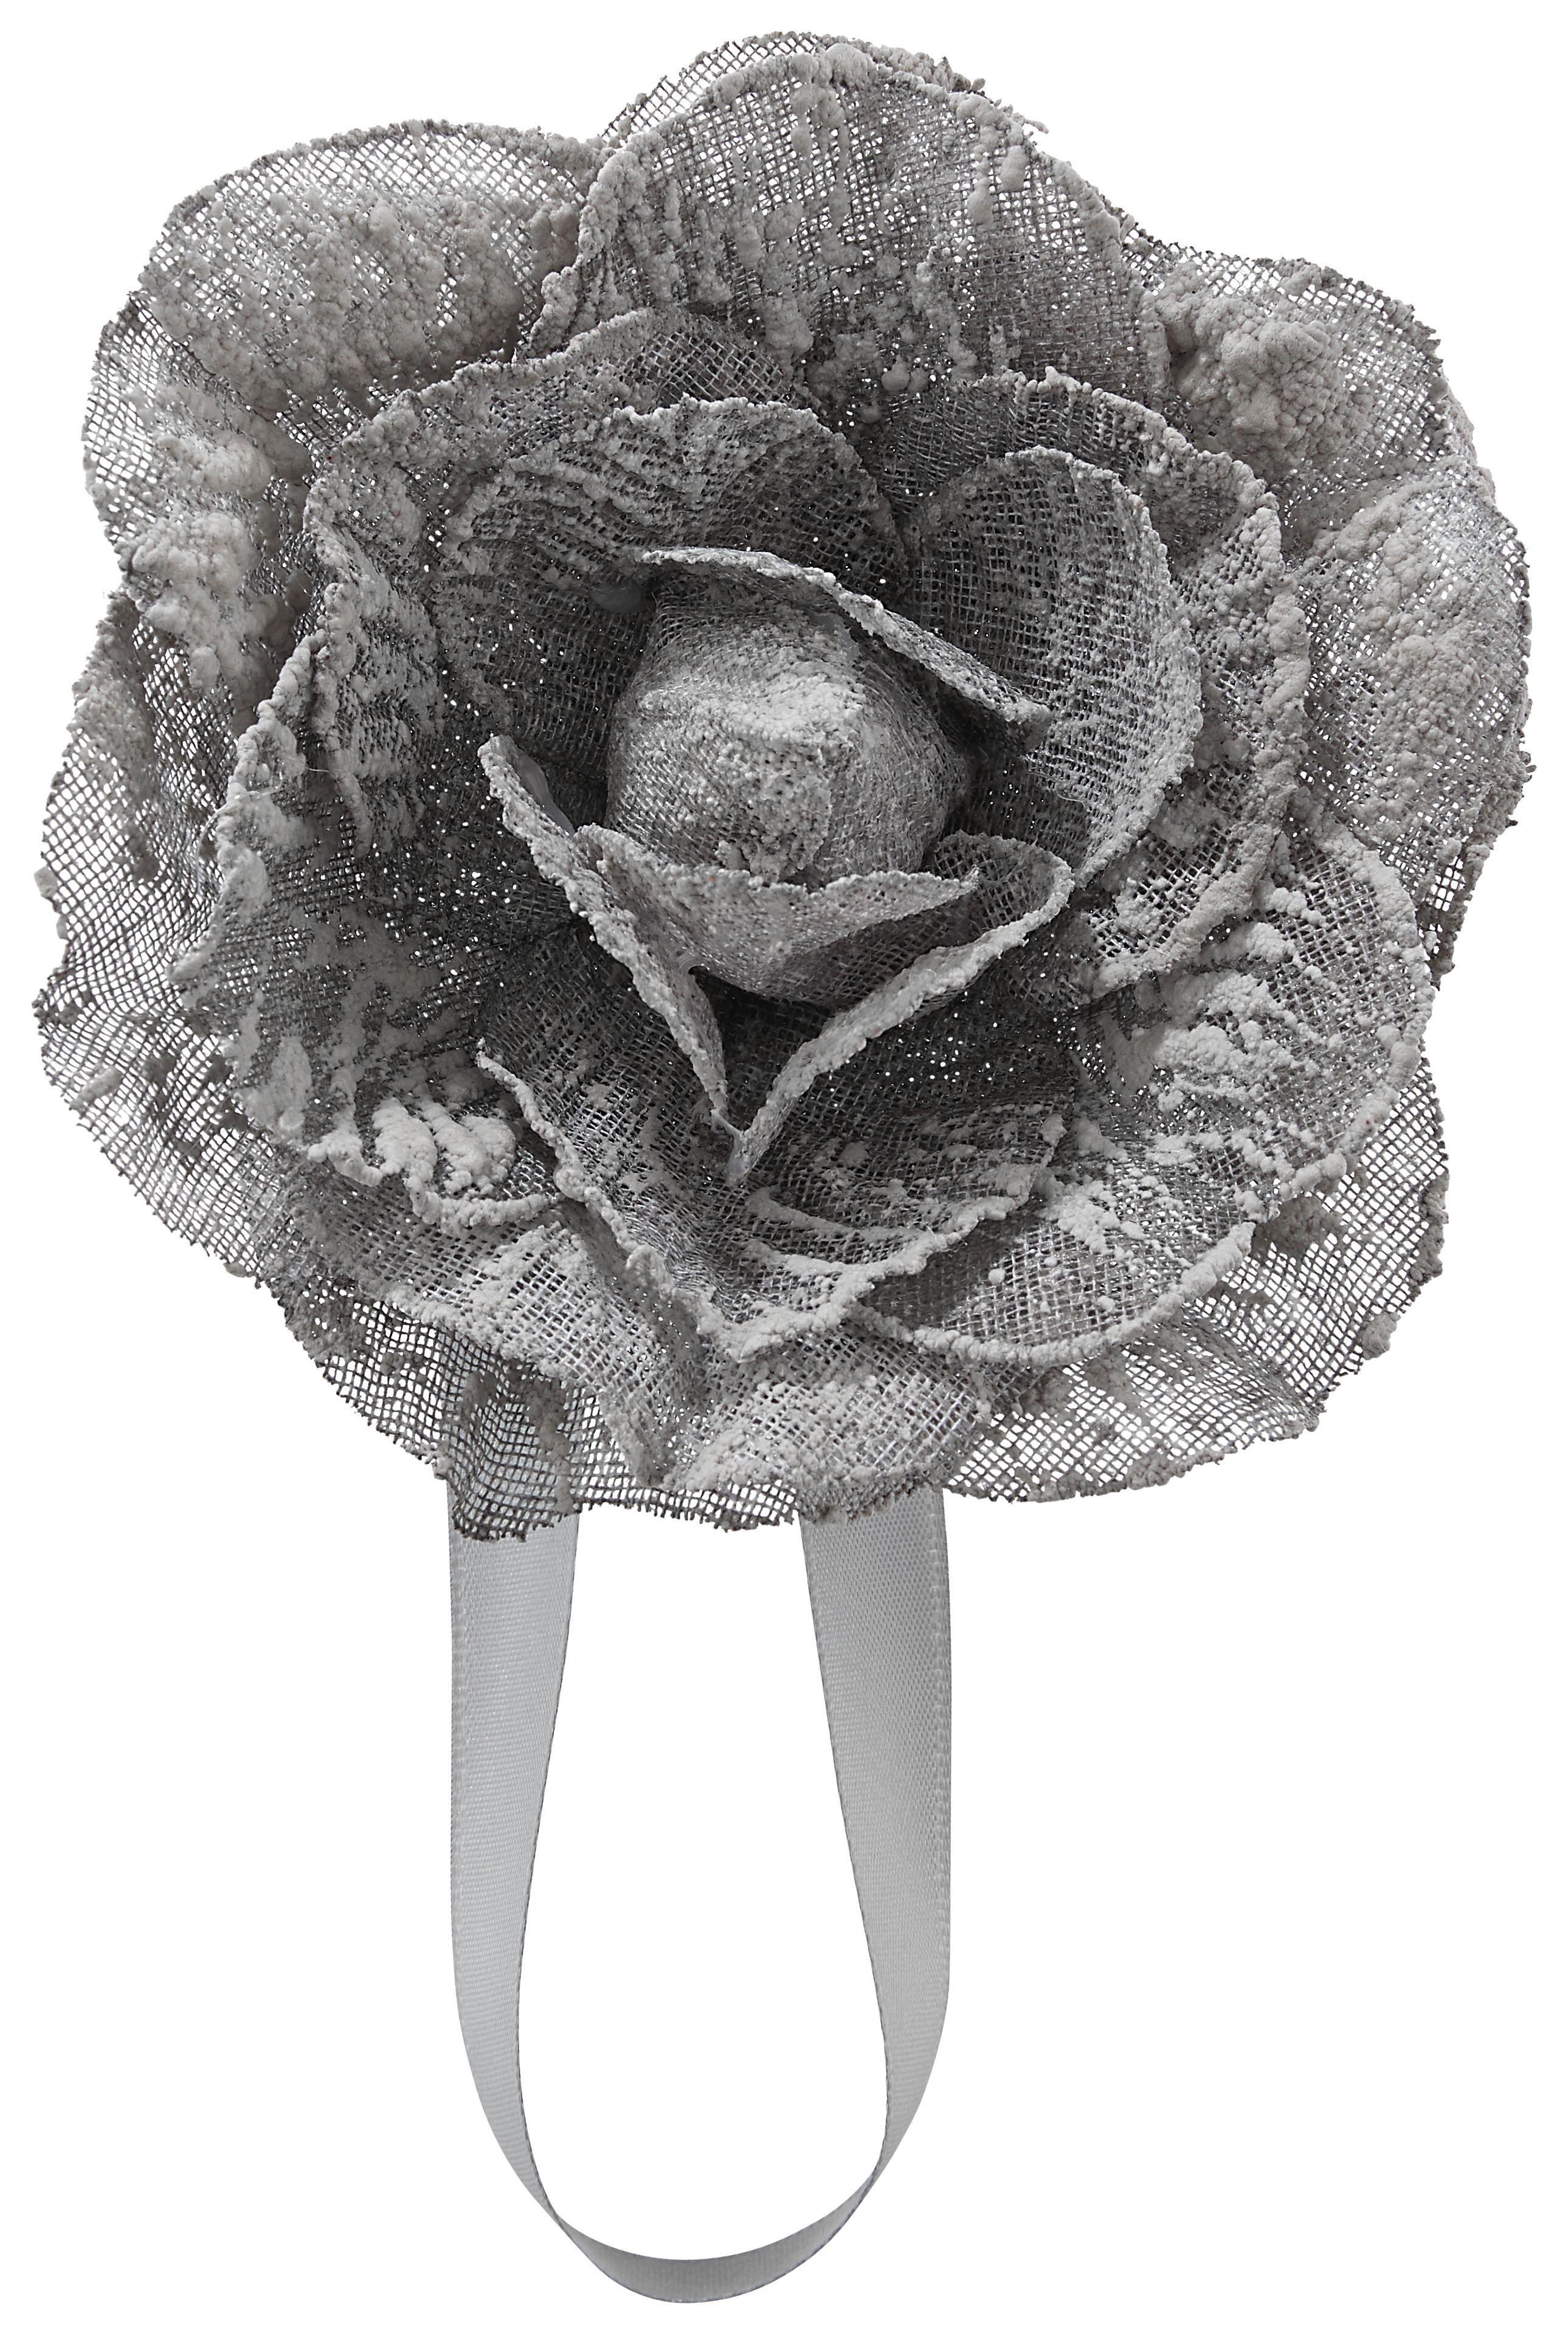 Spona Na Záves Rose - antracitová, Romantický / Vidiecky, textil (11cm) - Modern Living